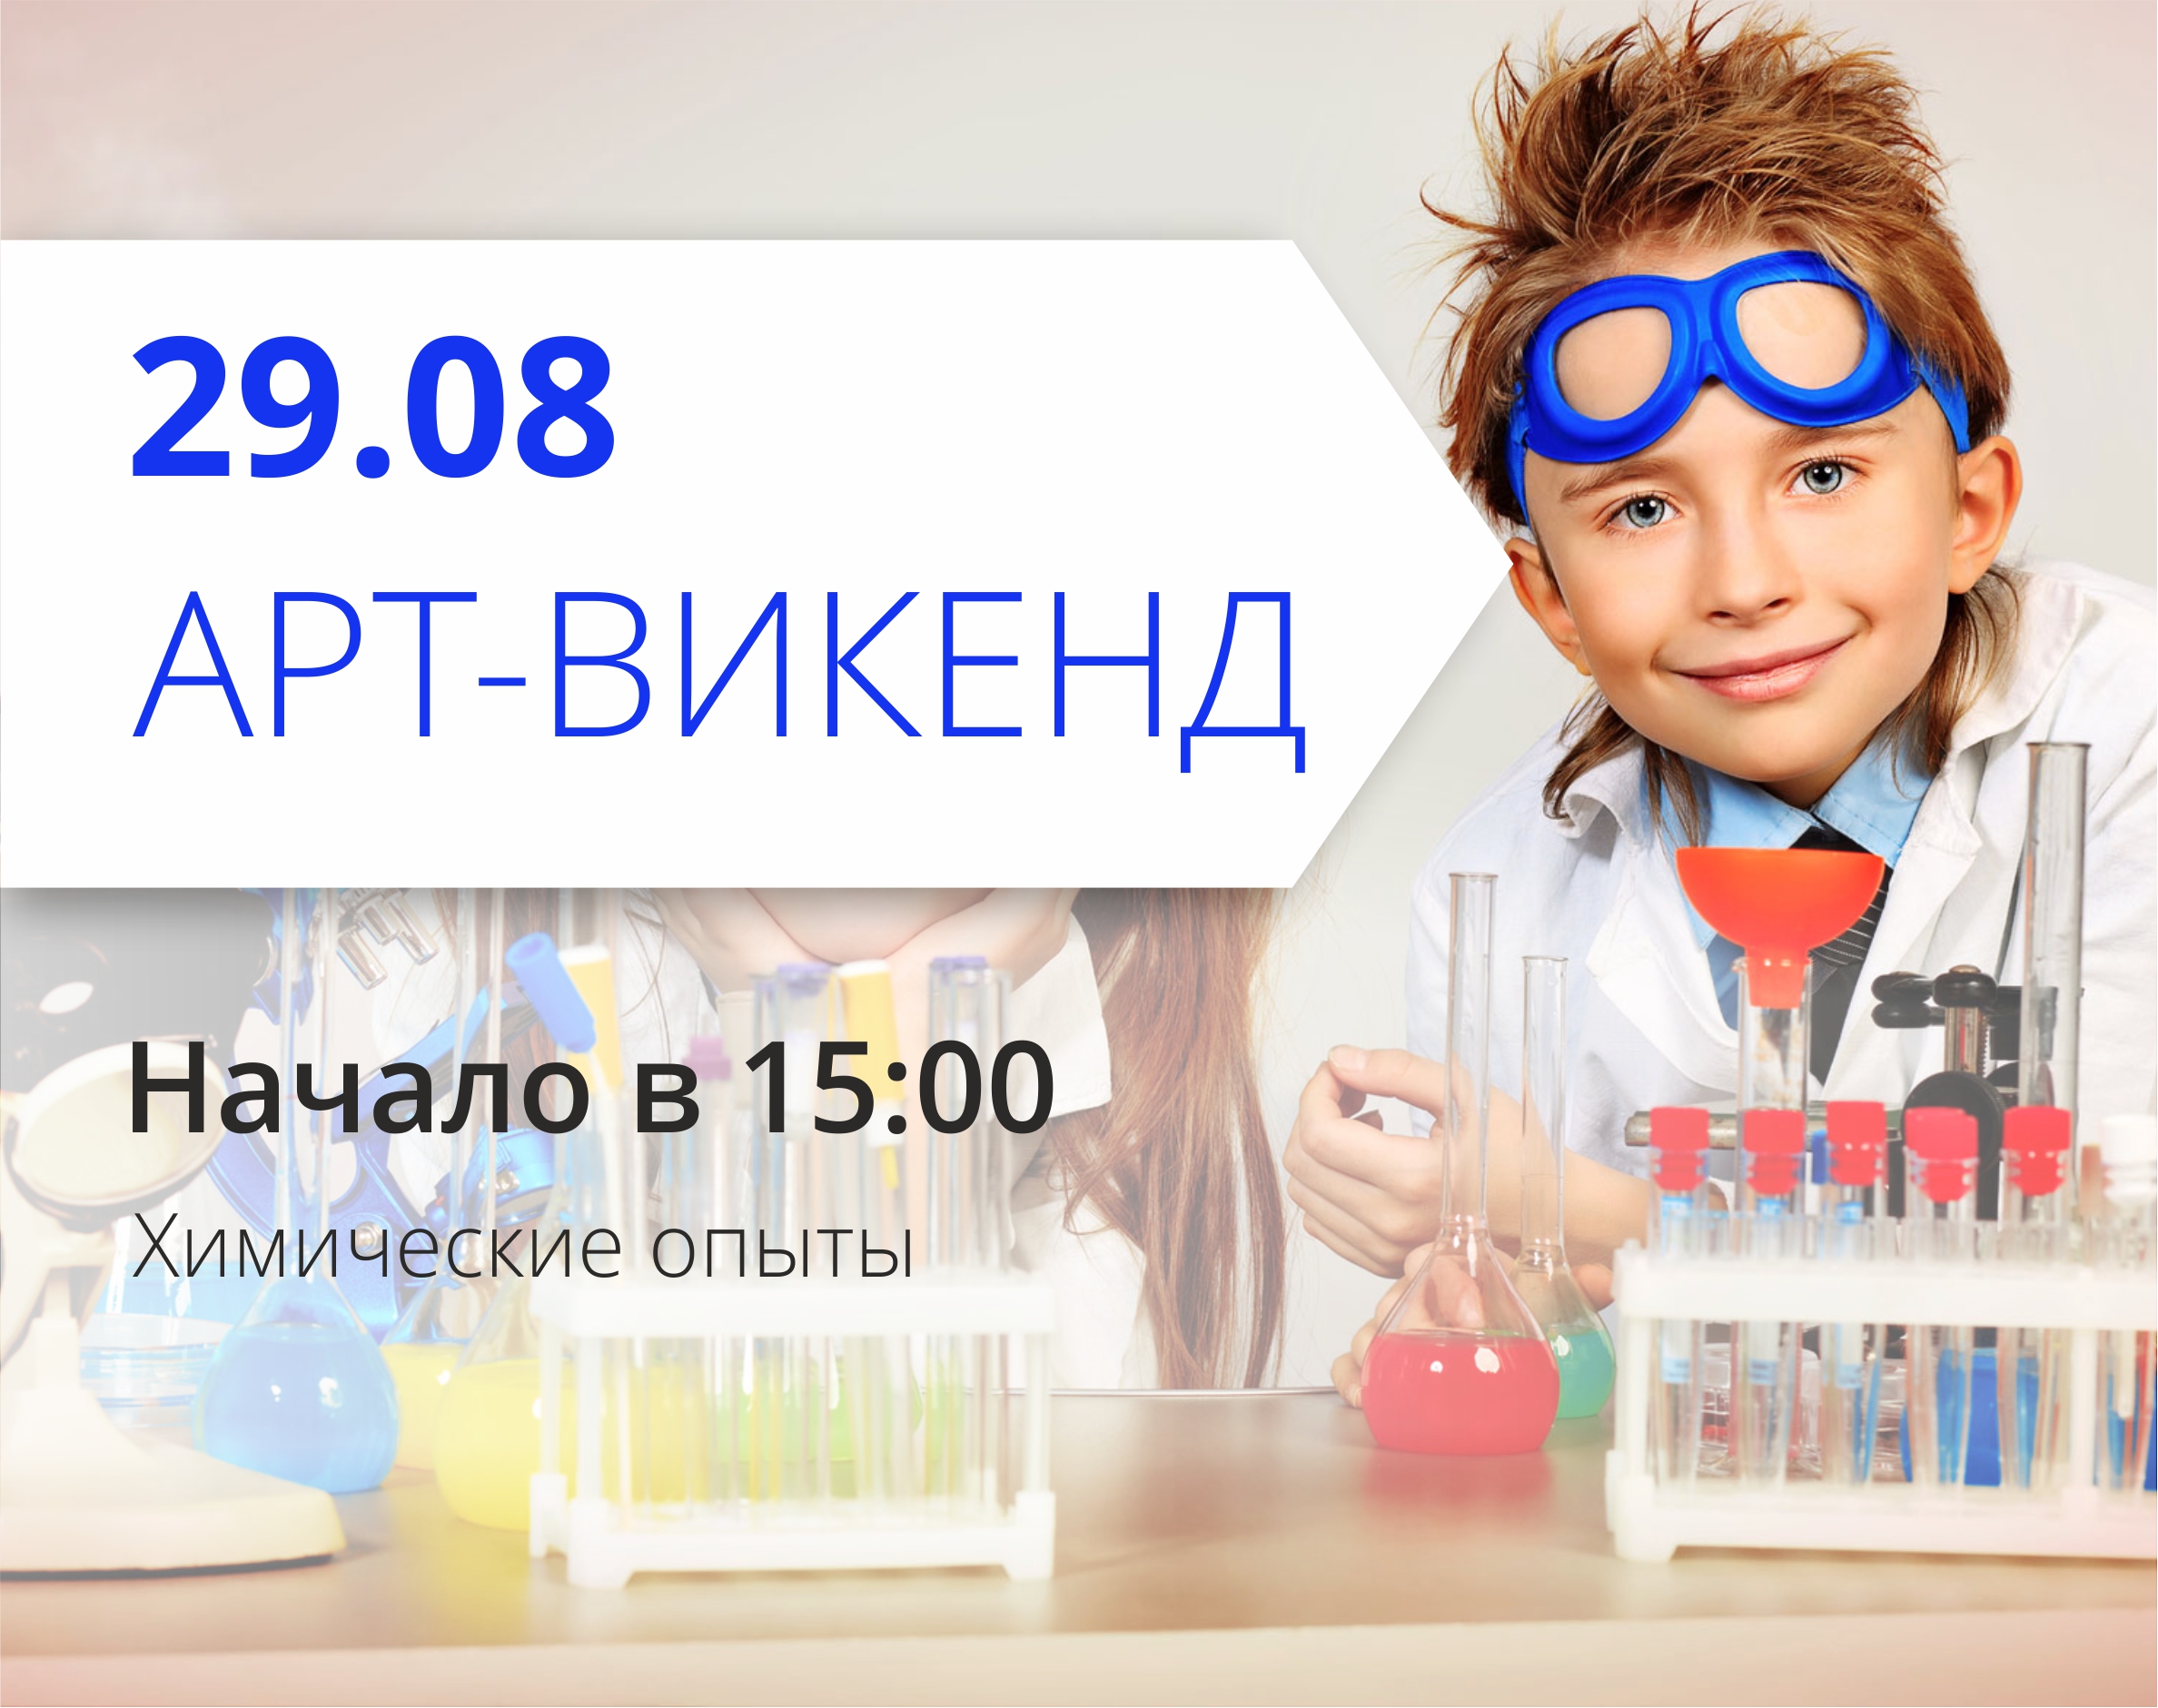 ТРЦ Любава приглашает посетить химические опыты